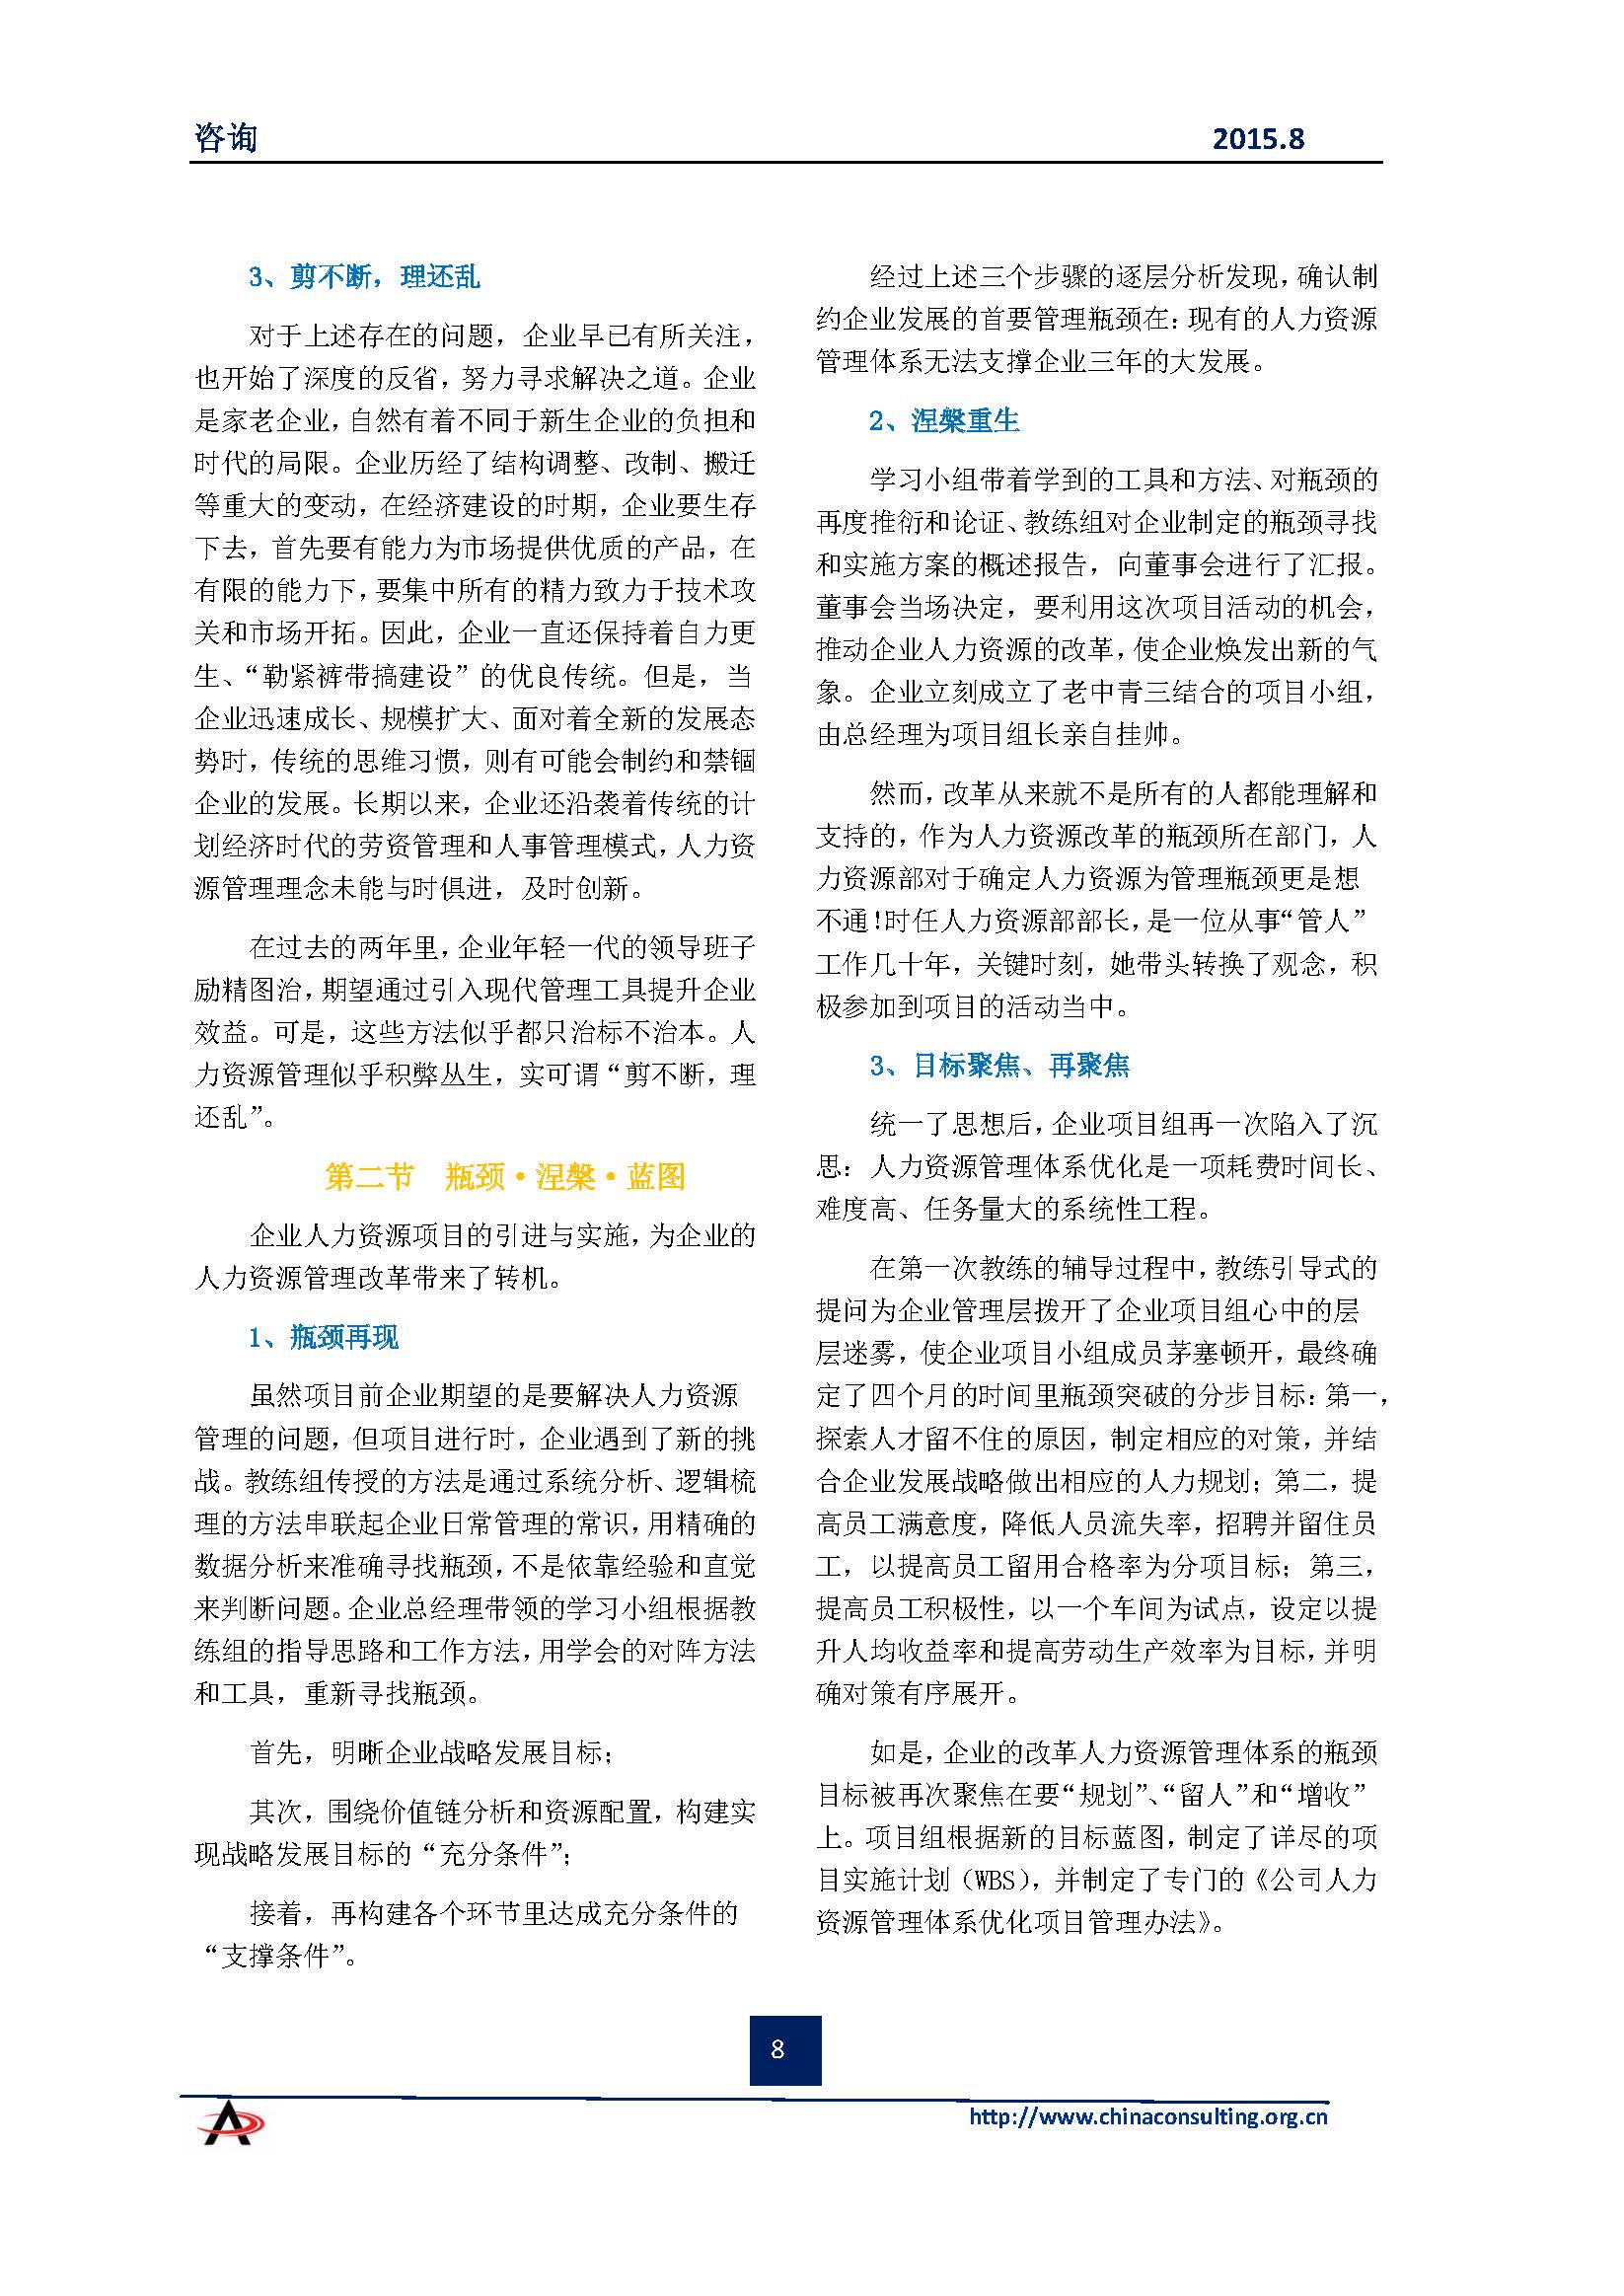 中国科技咨询协会会刊（第四十期）初稿_页面_10.jpg